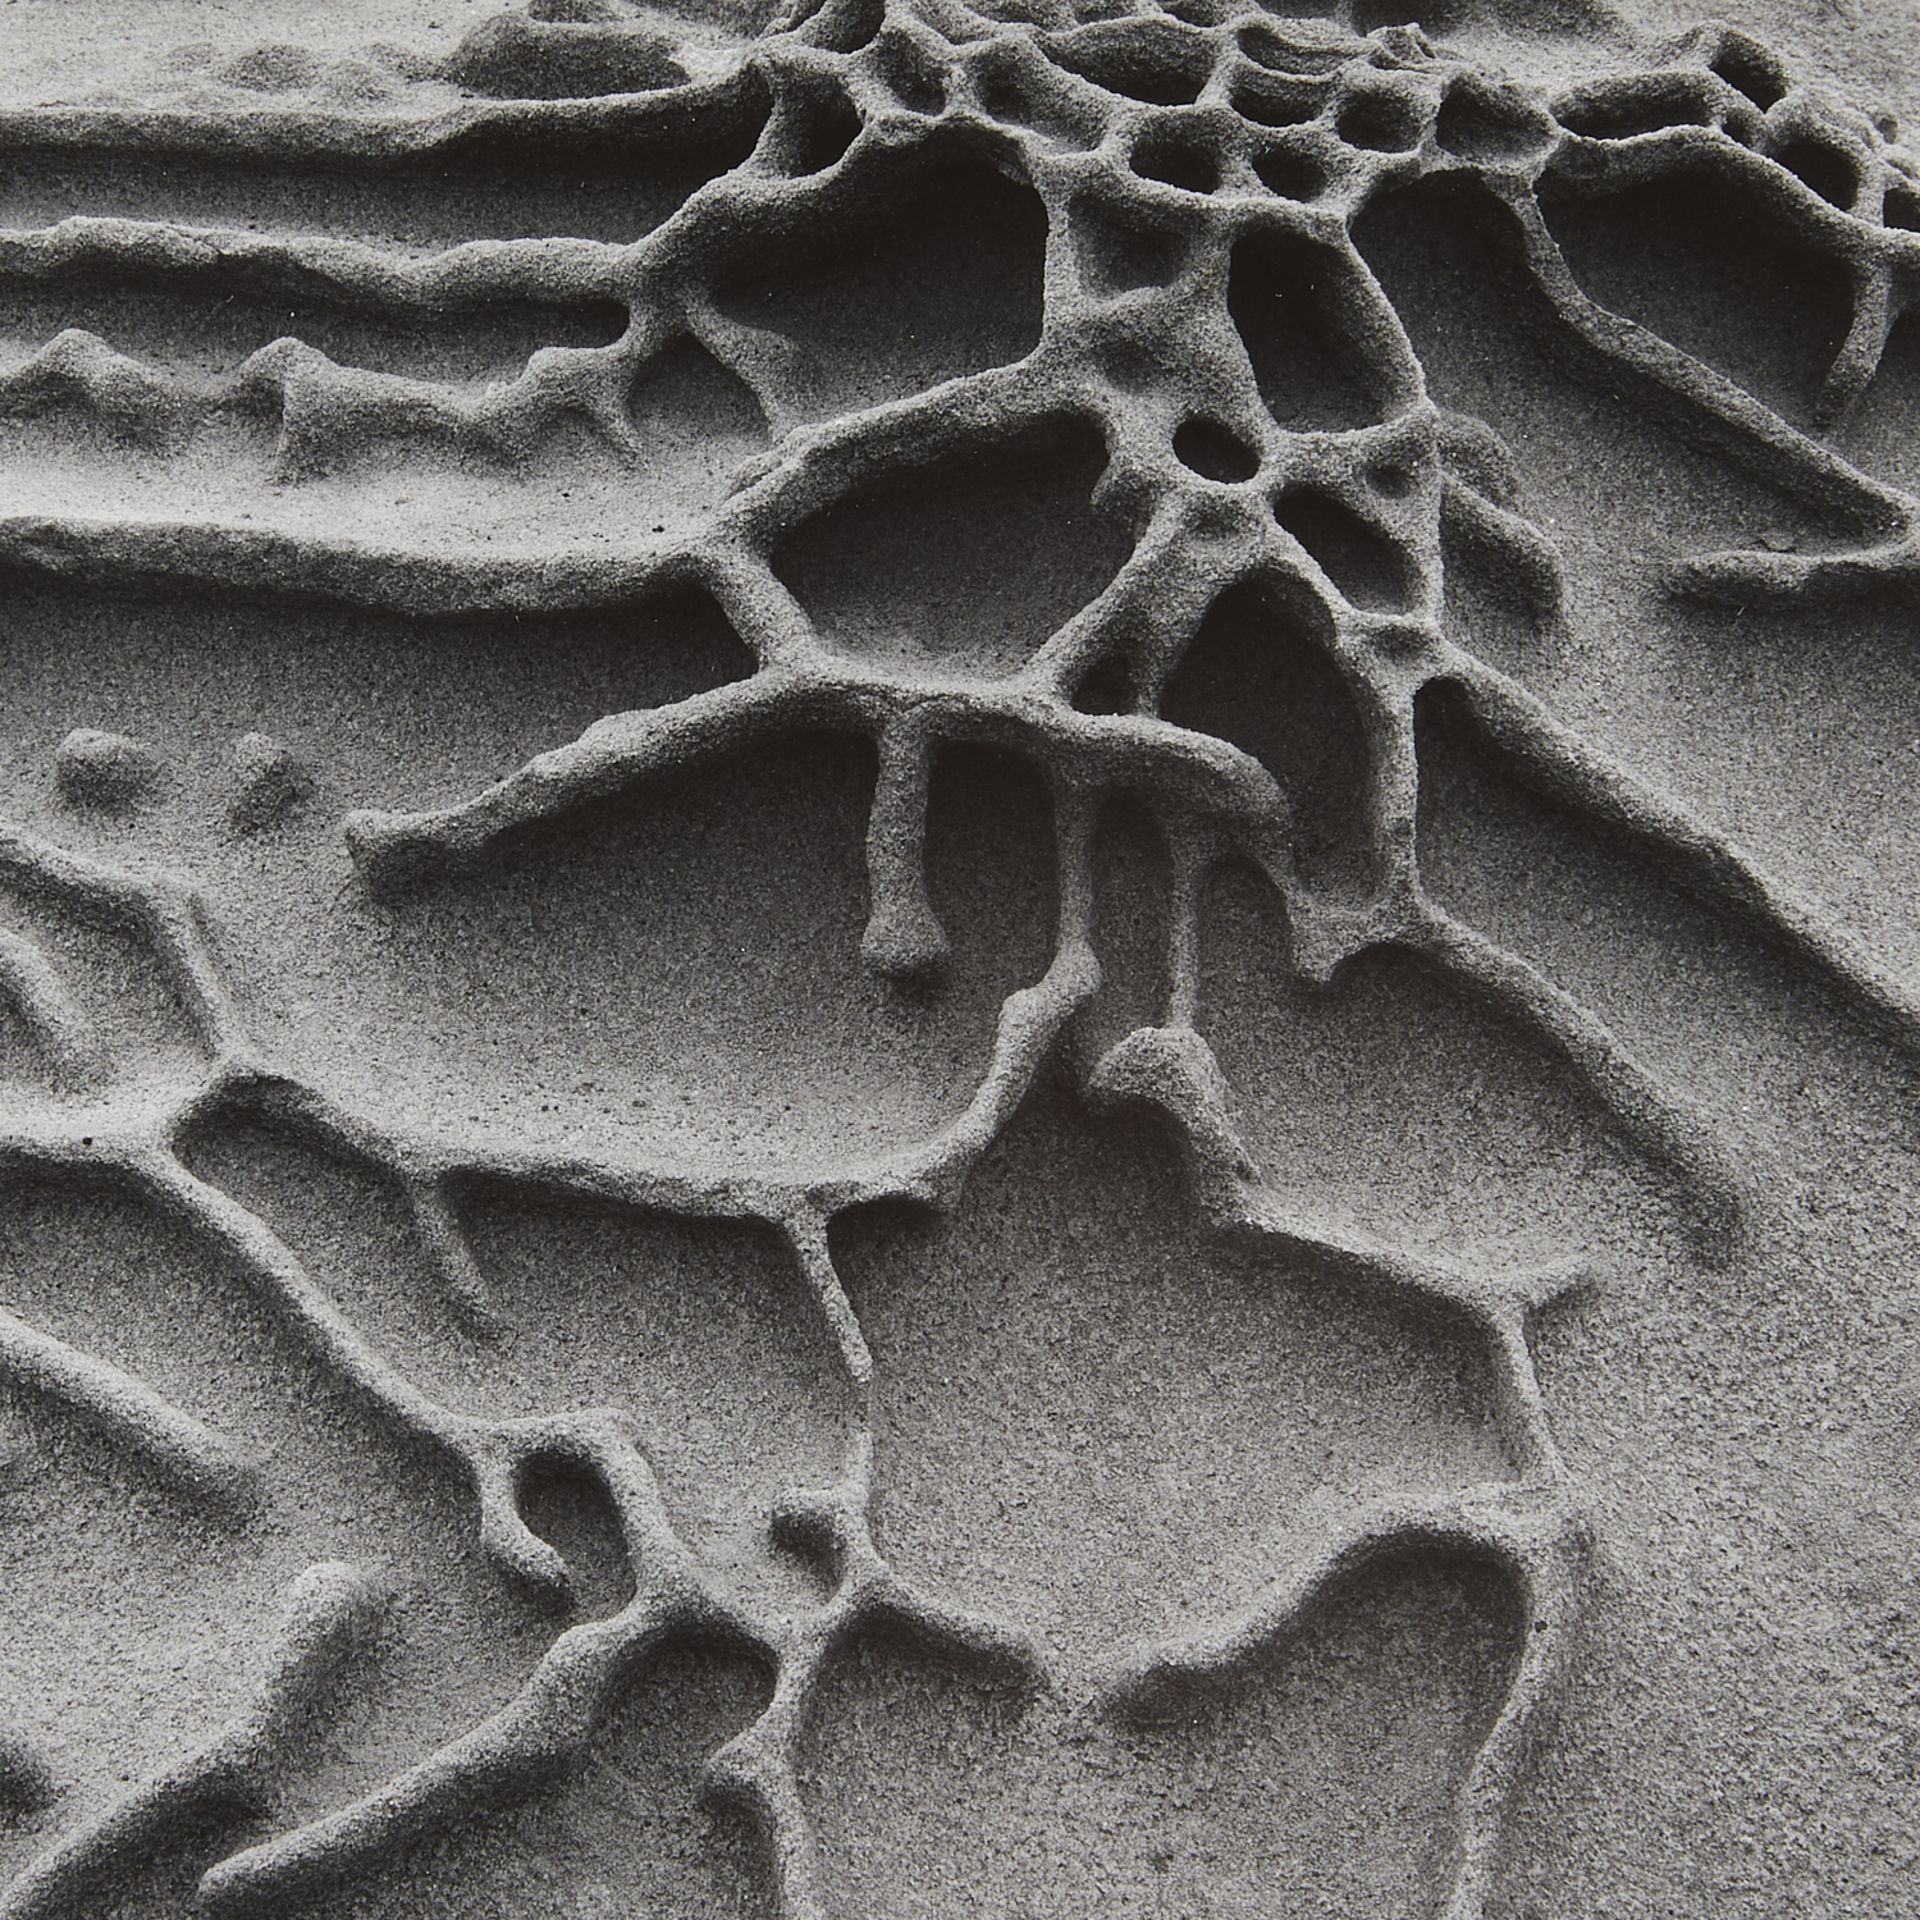 Edward & Cole Weston "Sandstone Erosion" GSP - Bild 2 aus 8